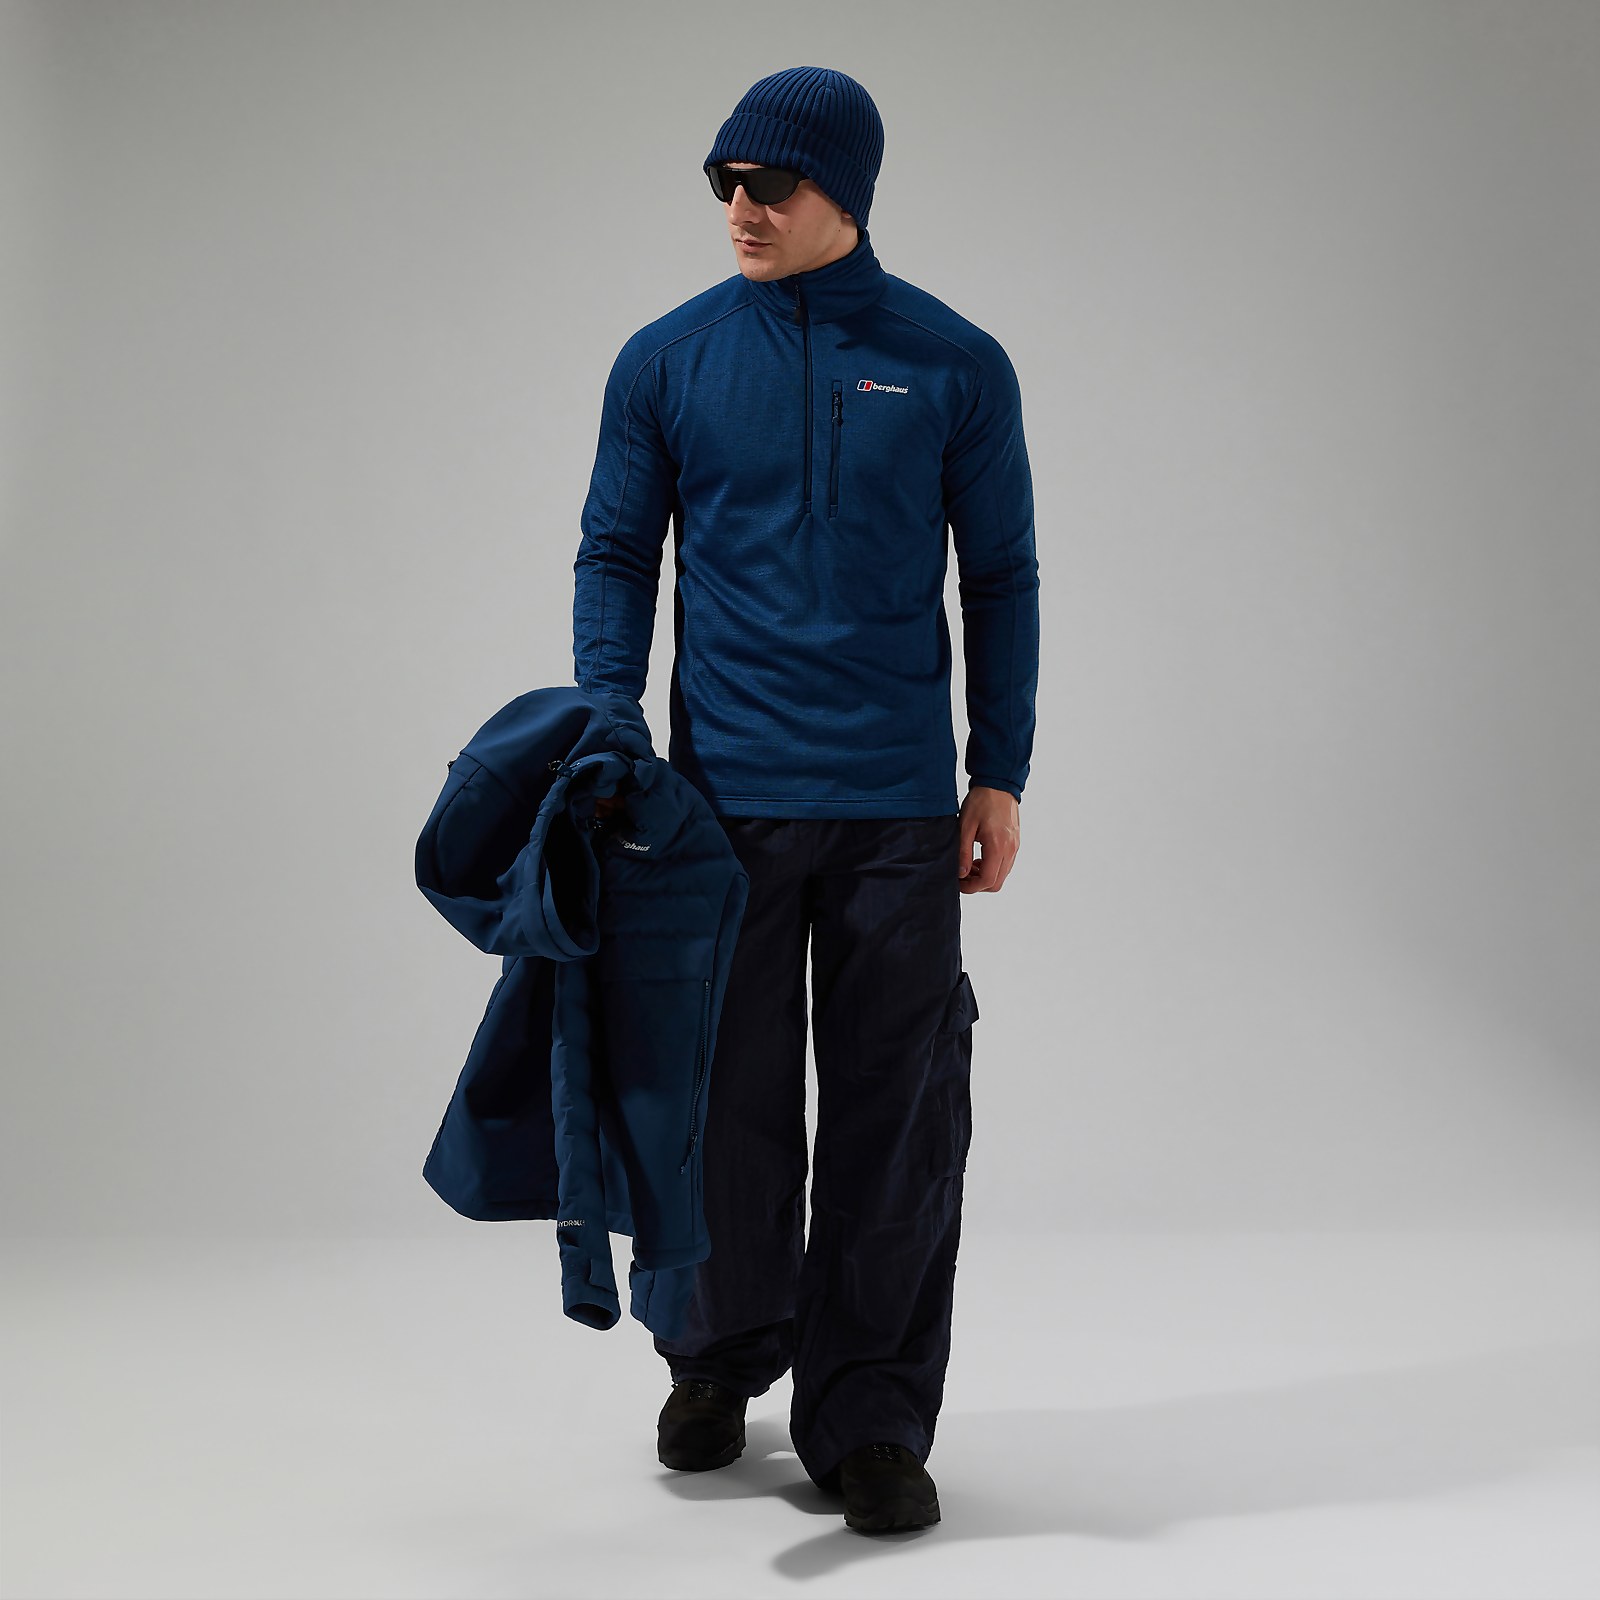 Men's URB Spitzer Half Zip Fleece - Turquoise/Blue product